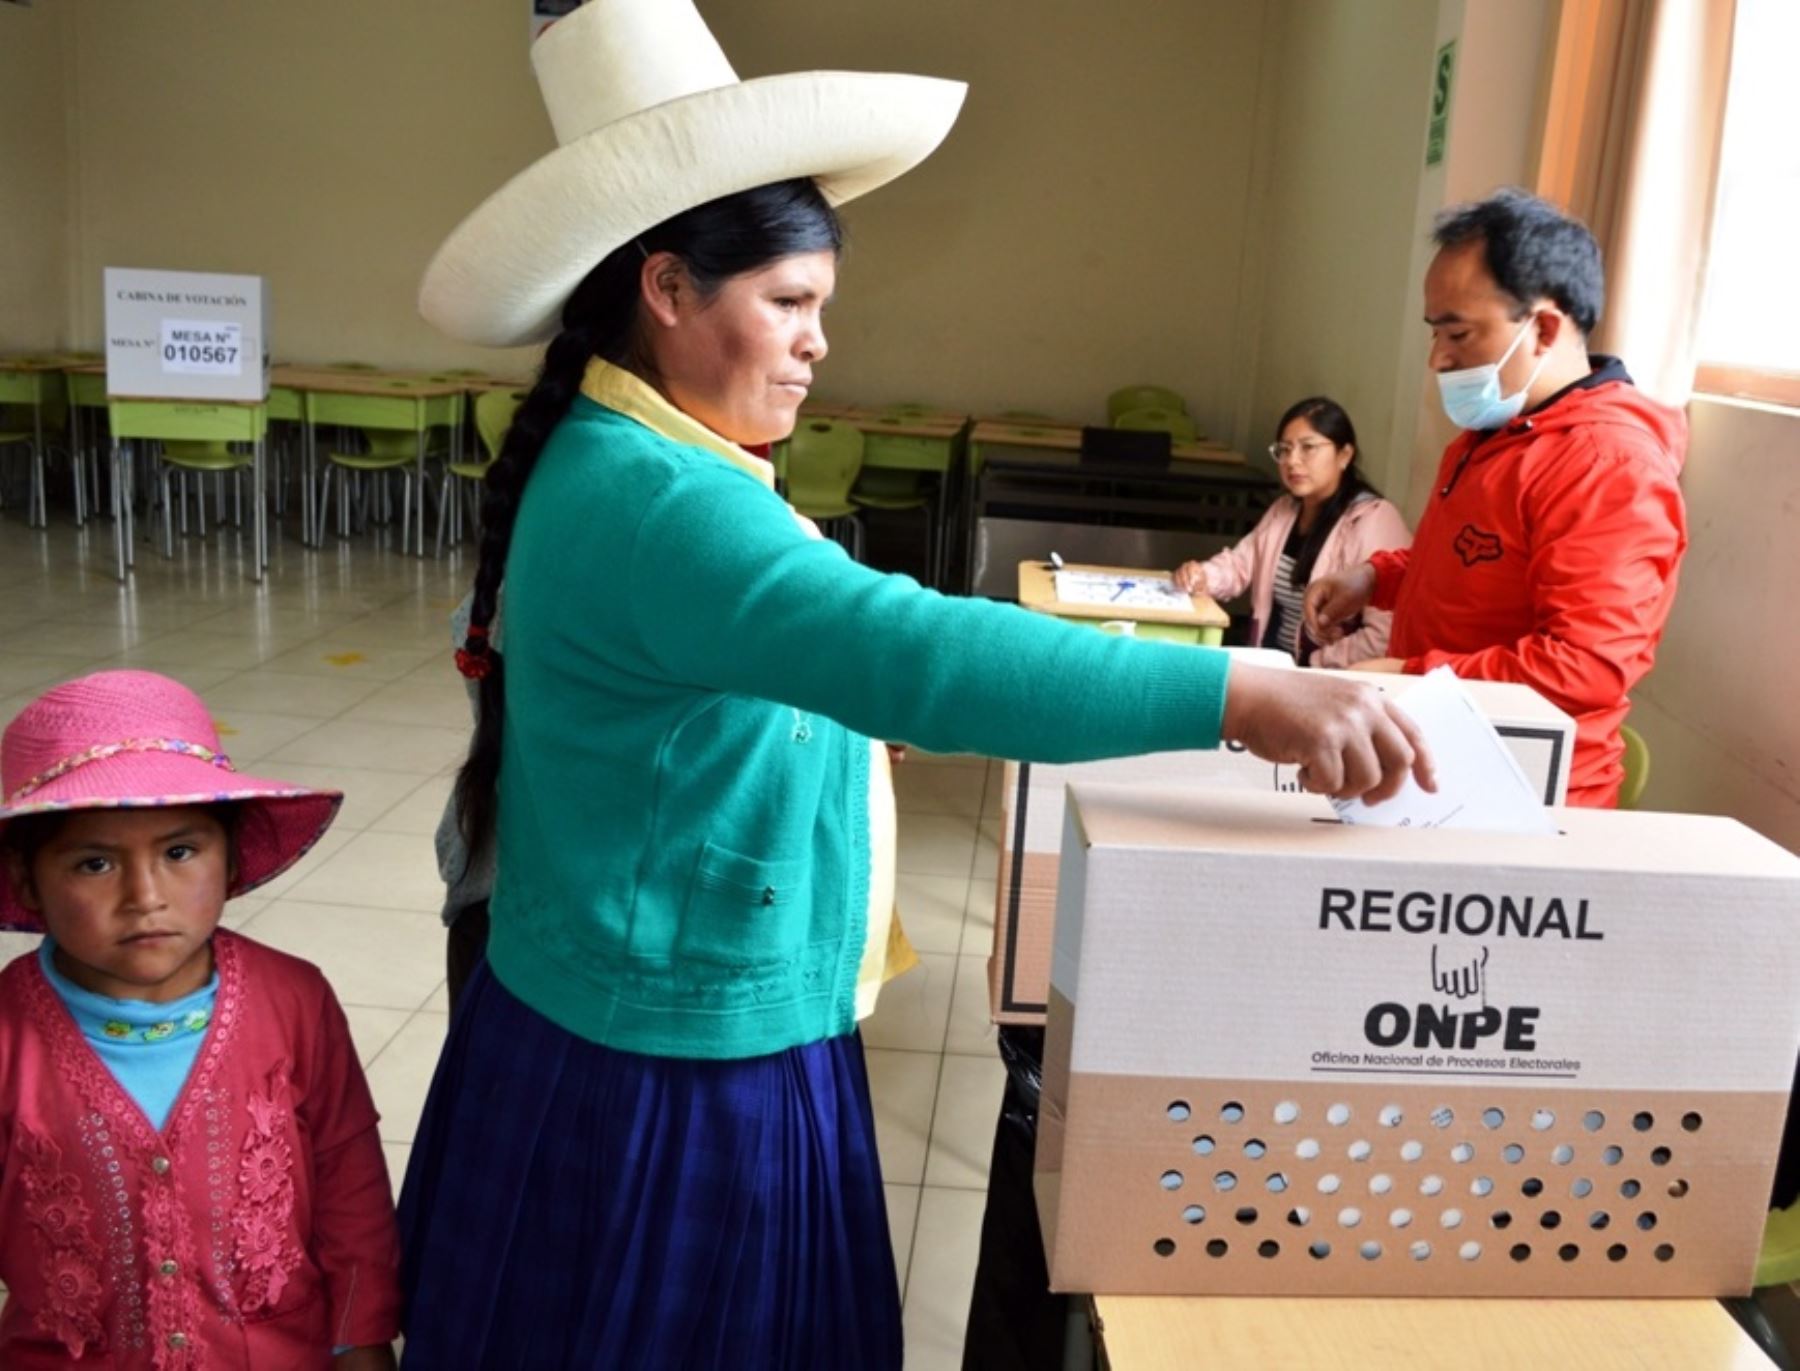 Jornada electoral se desarrolla con normalidad en Cajamarca. La población acude de forma masiva a votar al colegio emblemático San Ramón de esta ciudad. Foto: Eduard Lozano